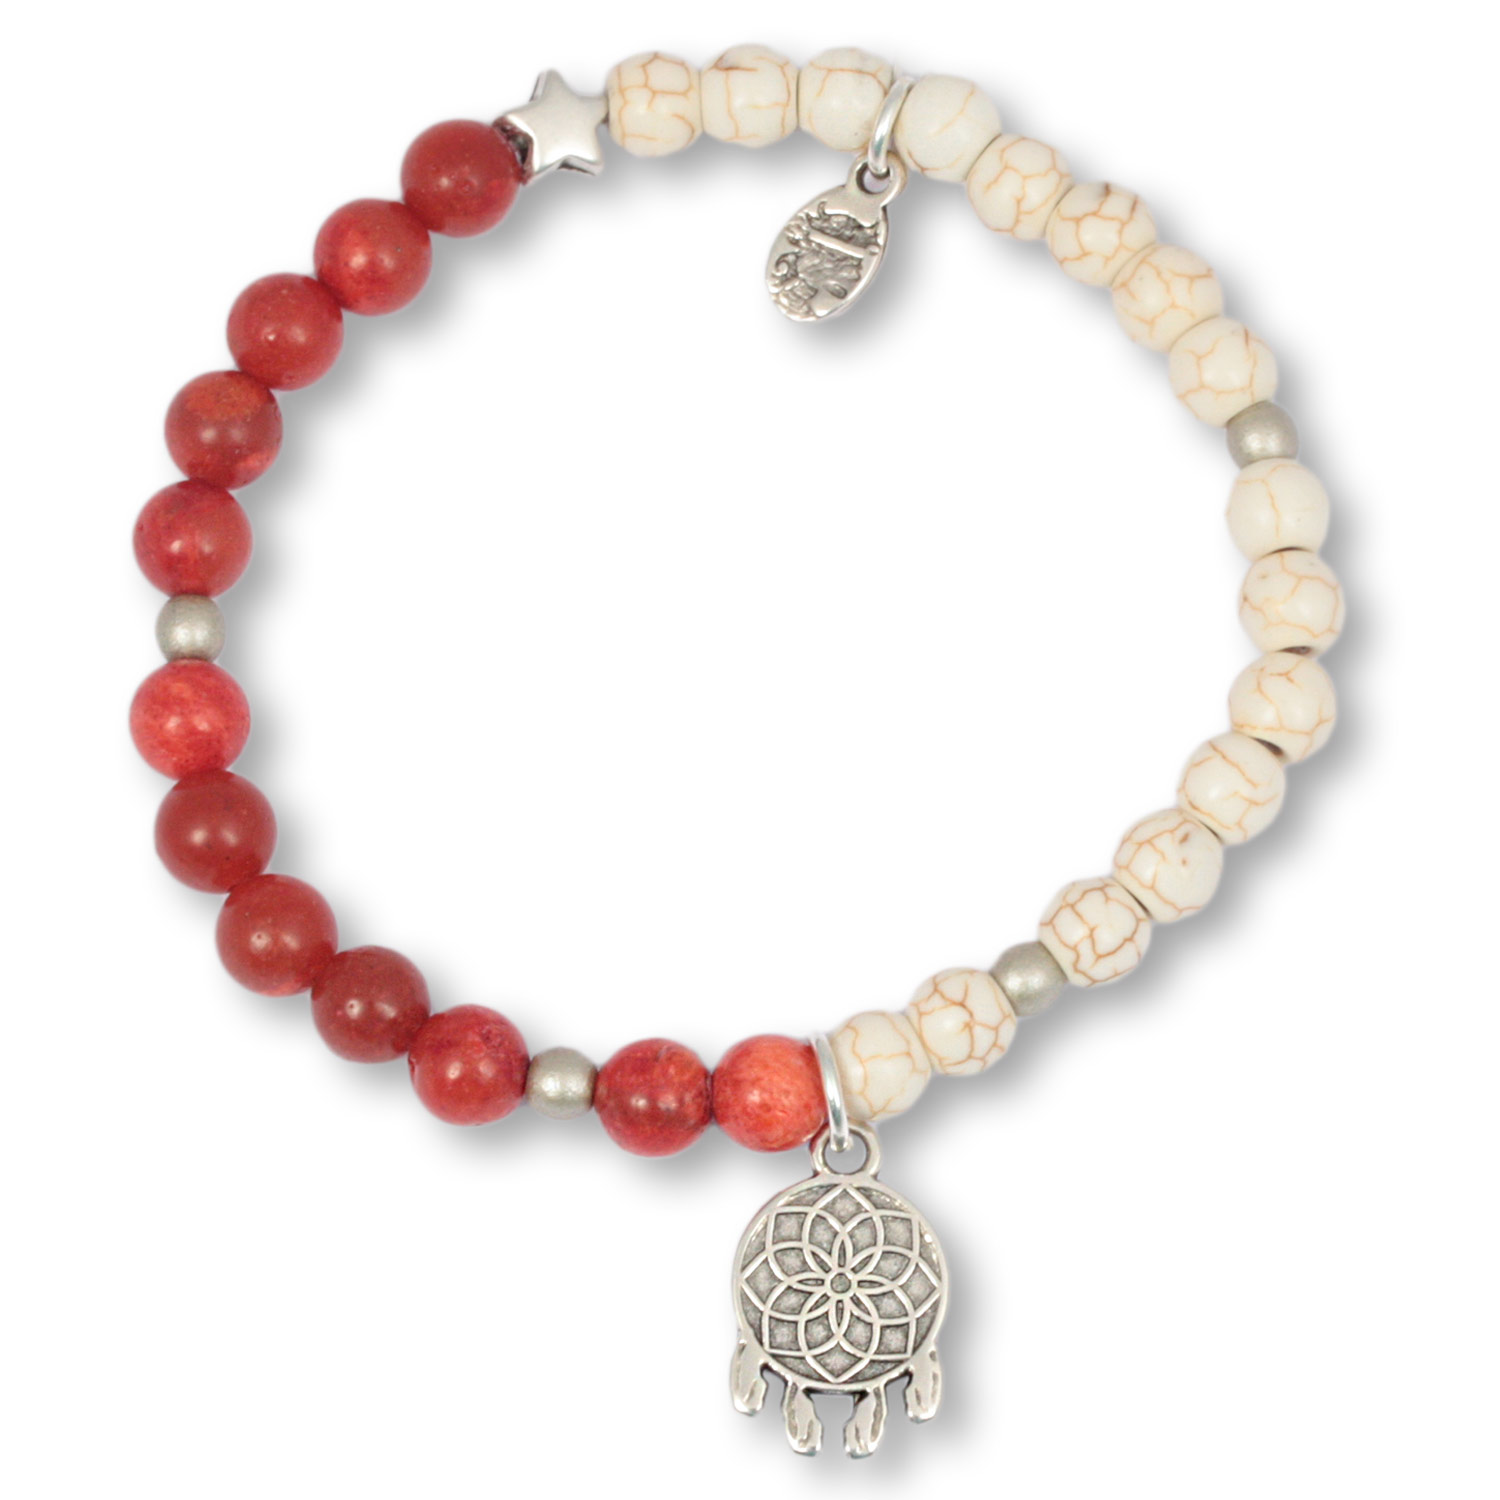 Golden Coral Dreamcatcher - gemstone bracelet with dreamcatcher